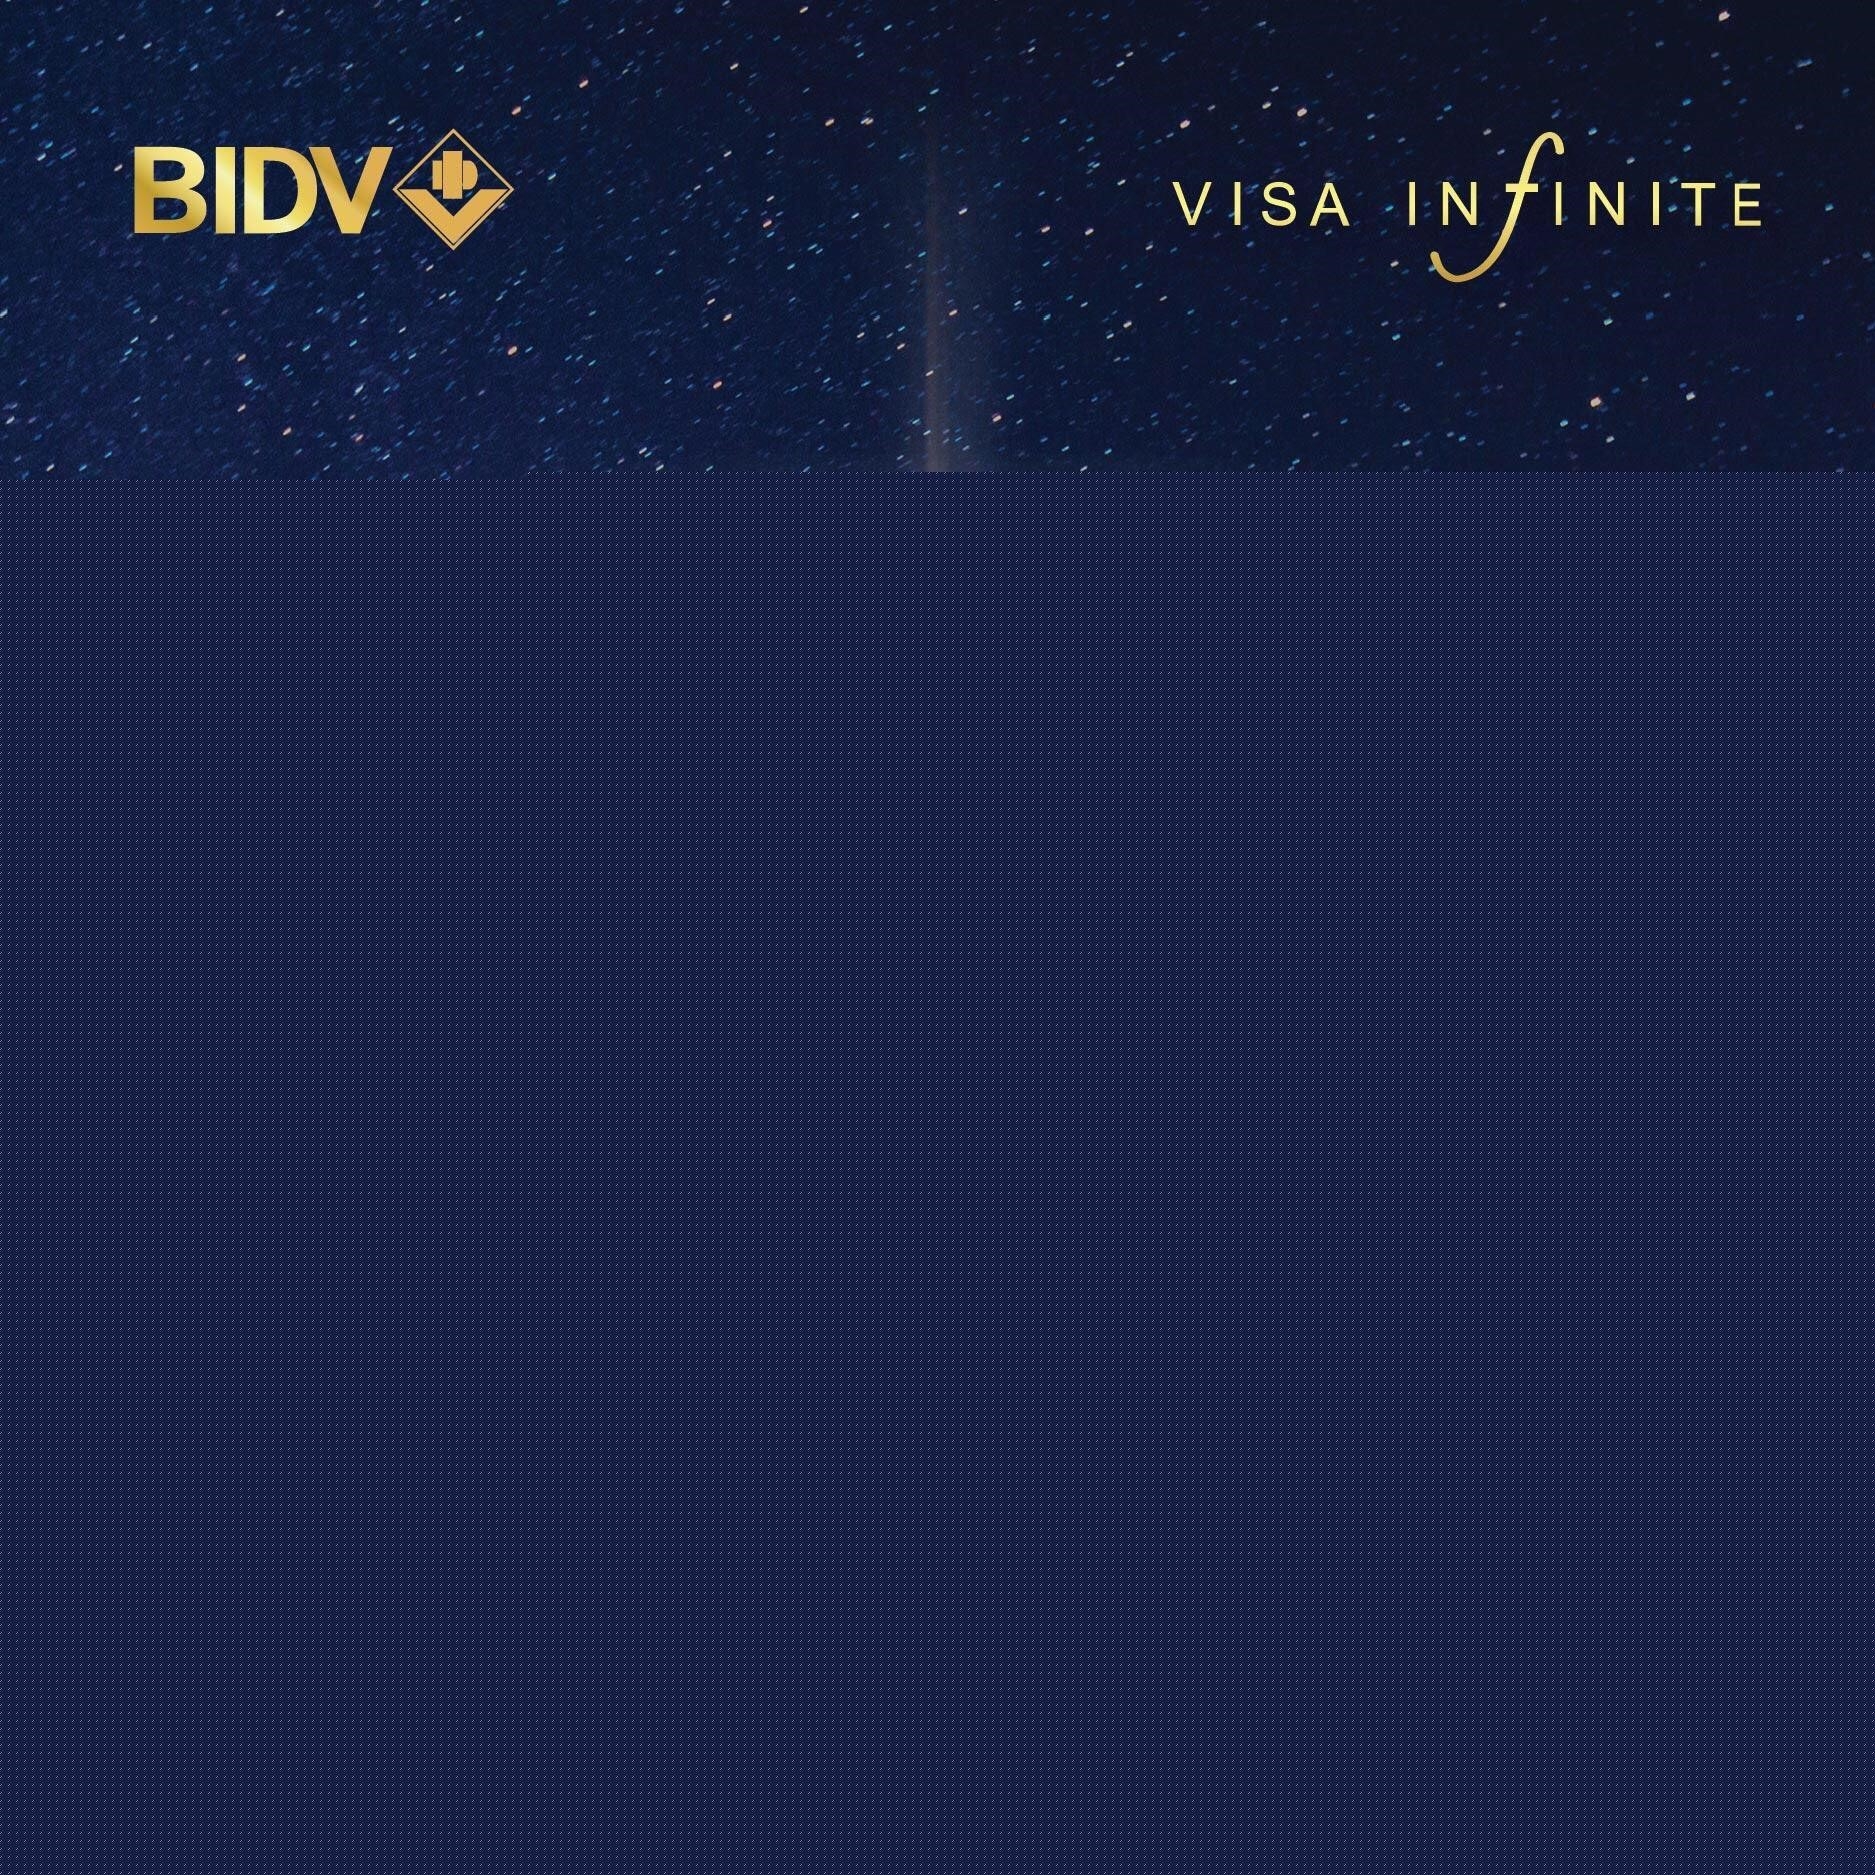 Thẻ đen BIDV là một loại thẻ ngân hàng được phát hành bởi Ngân hàng Đầu tư và Phát triển Việt Nam (BIDV), có màu sắc đen tinh tế và hiện đại, được thiết kế để đáp ứng nhu cầu thanh toán và giao dịch của khách hàng một cách tiện lợi và an toàn.